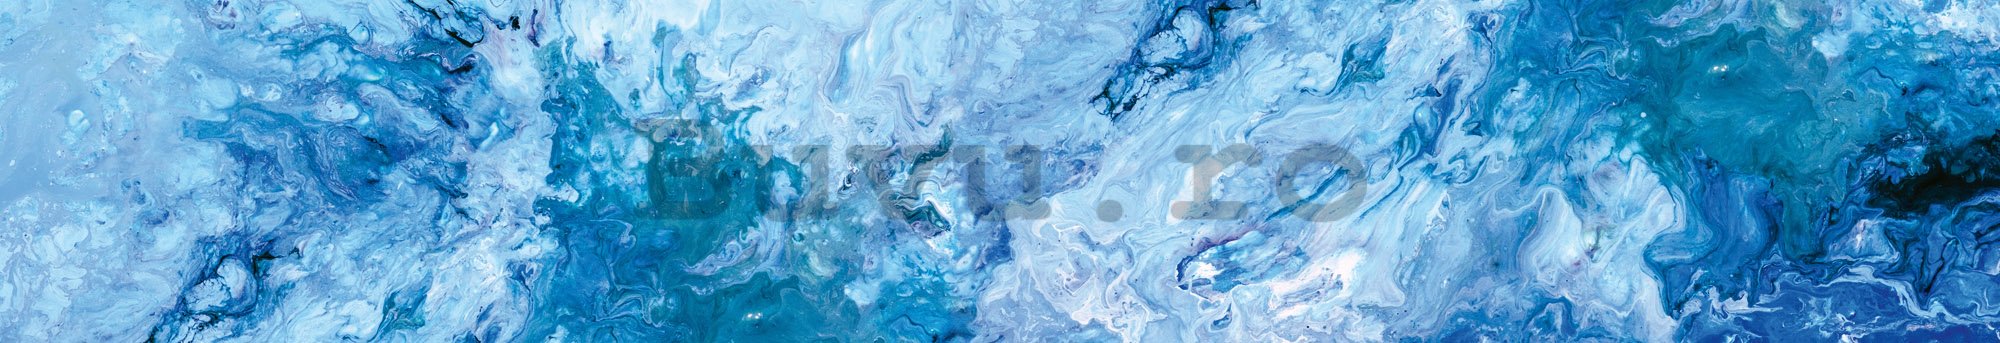 Tapet autoadeziv lavabil pentru bucătărie - Marmură albastră, 350x60 cm